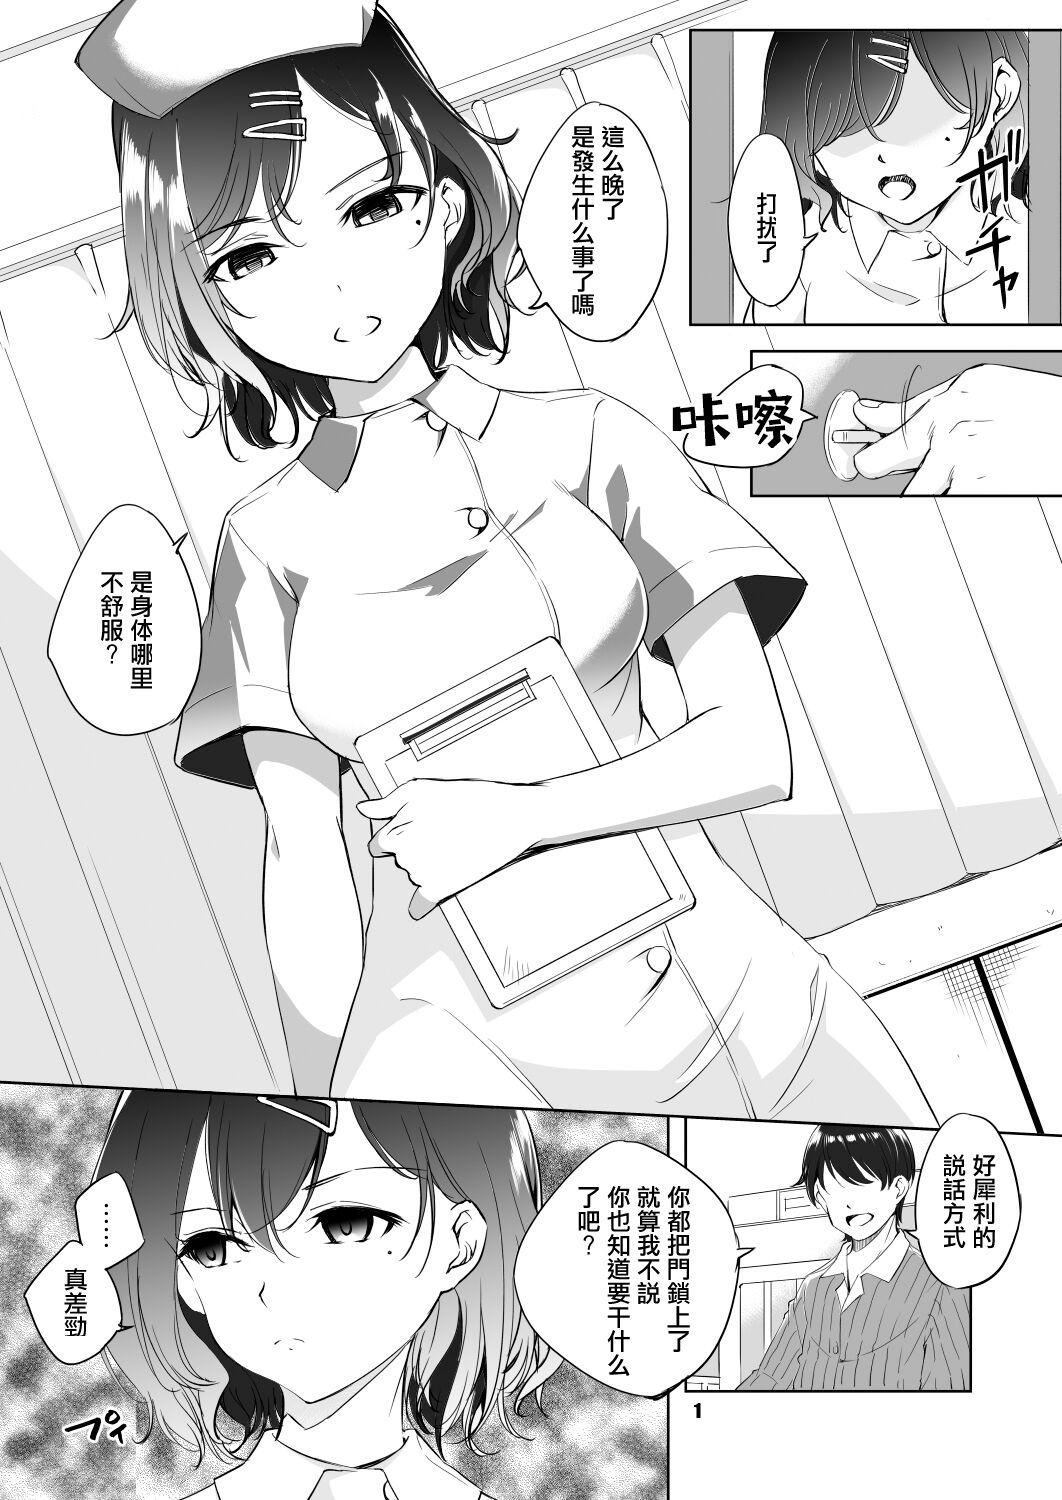 Higuchi Madoka Nurse Cosplay Manga 1